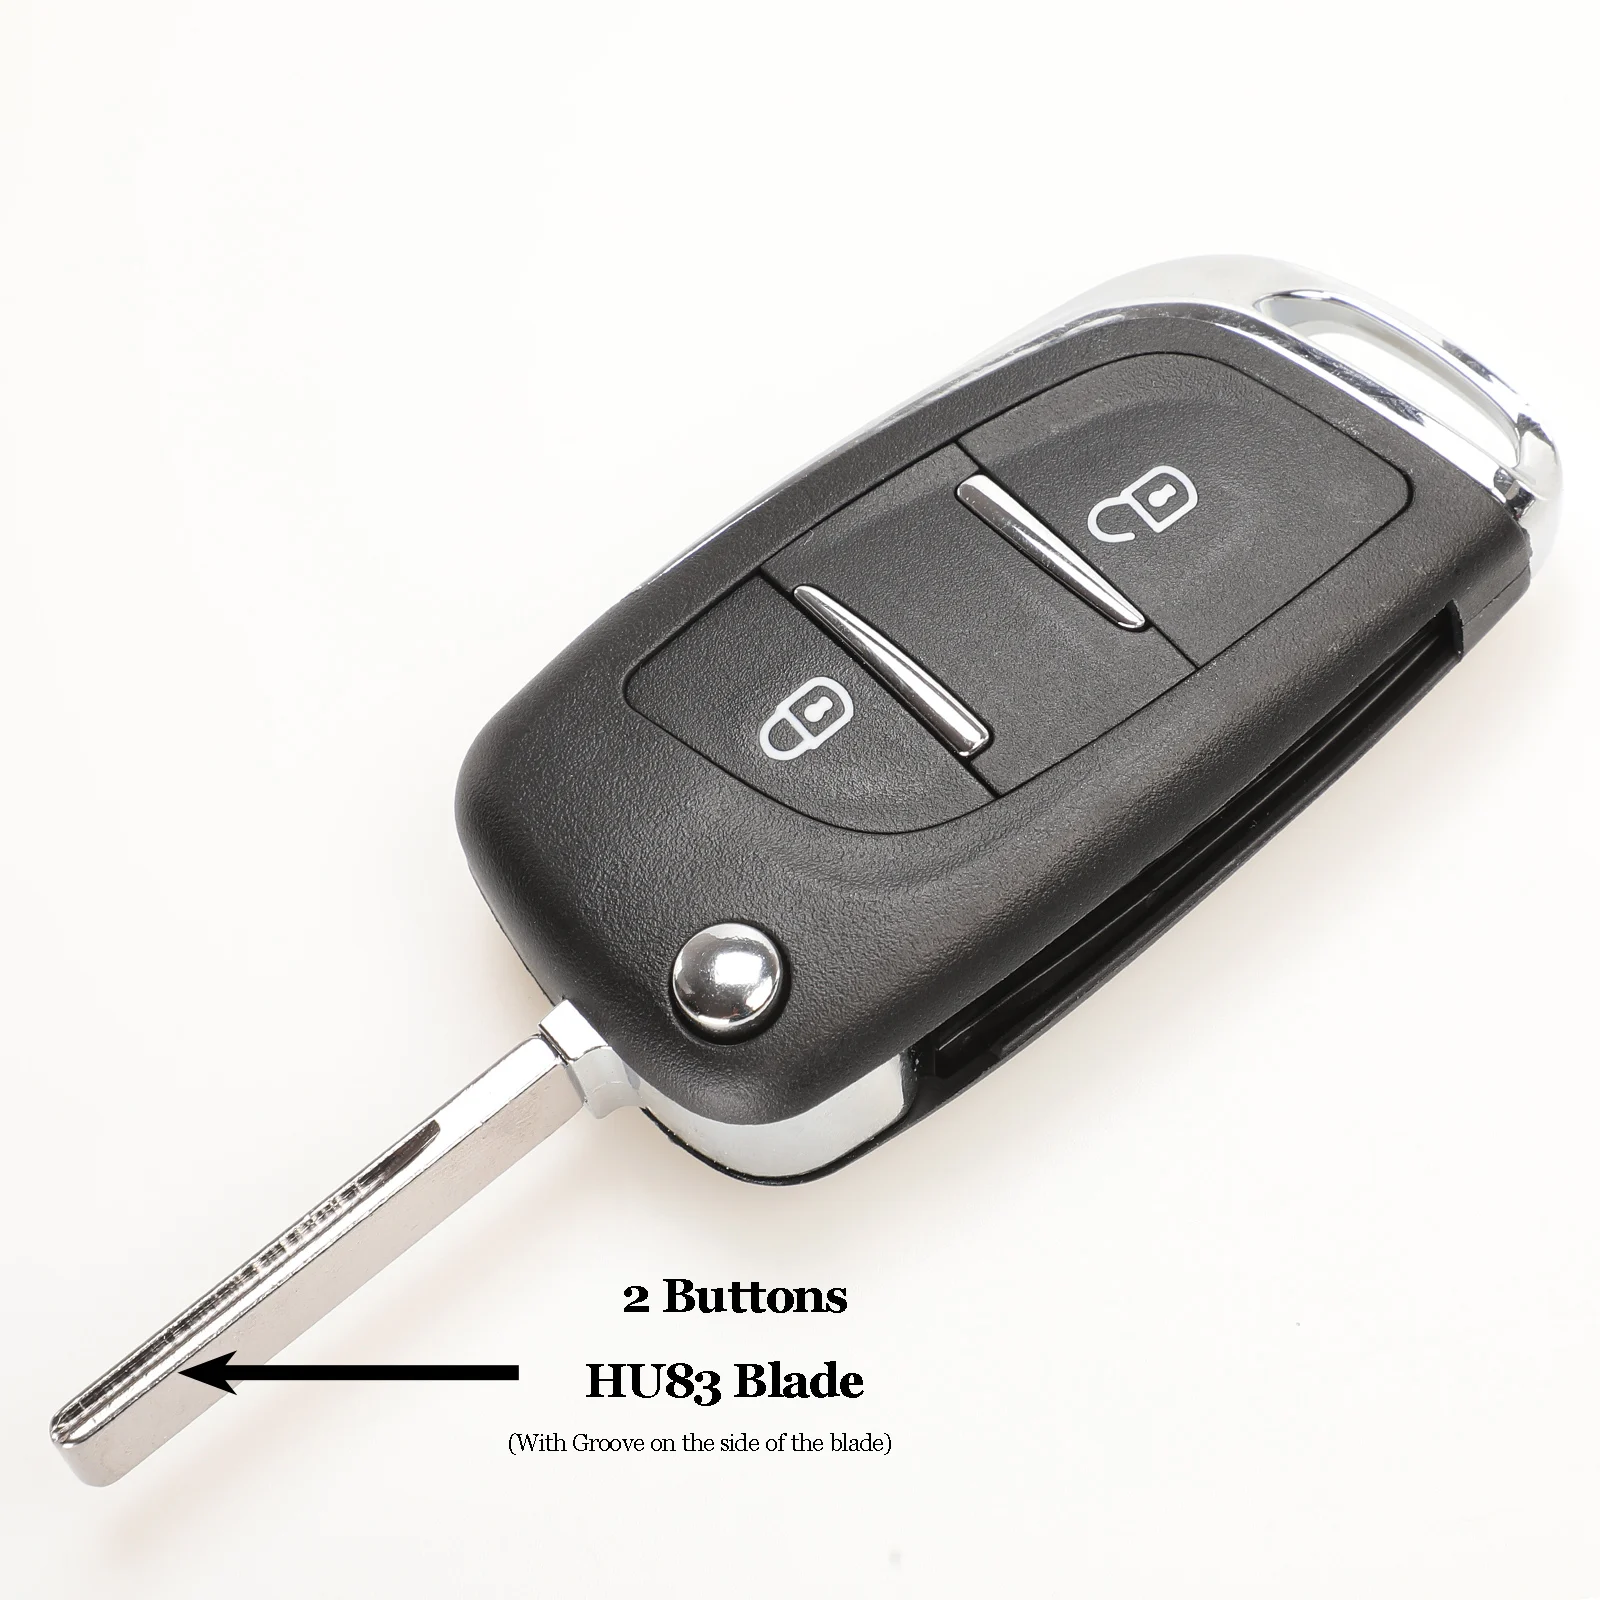 Jingyuqin CE0523 модифицированный откидной Складной Корпус ключа для Peugeot 306 407 807 Partner Remote VA2/HU83 Blade entrip Fob чехол 2/3 кнопка - Цвет: HCA 2 Button CE523